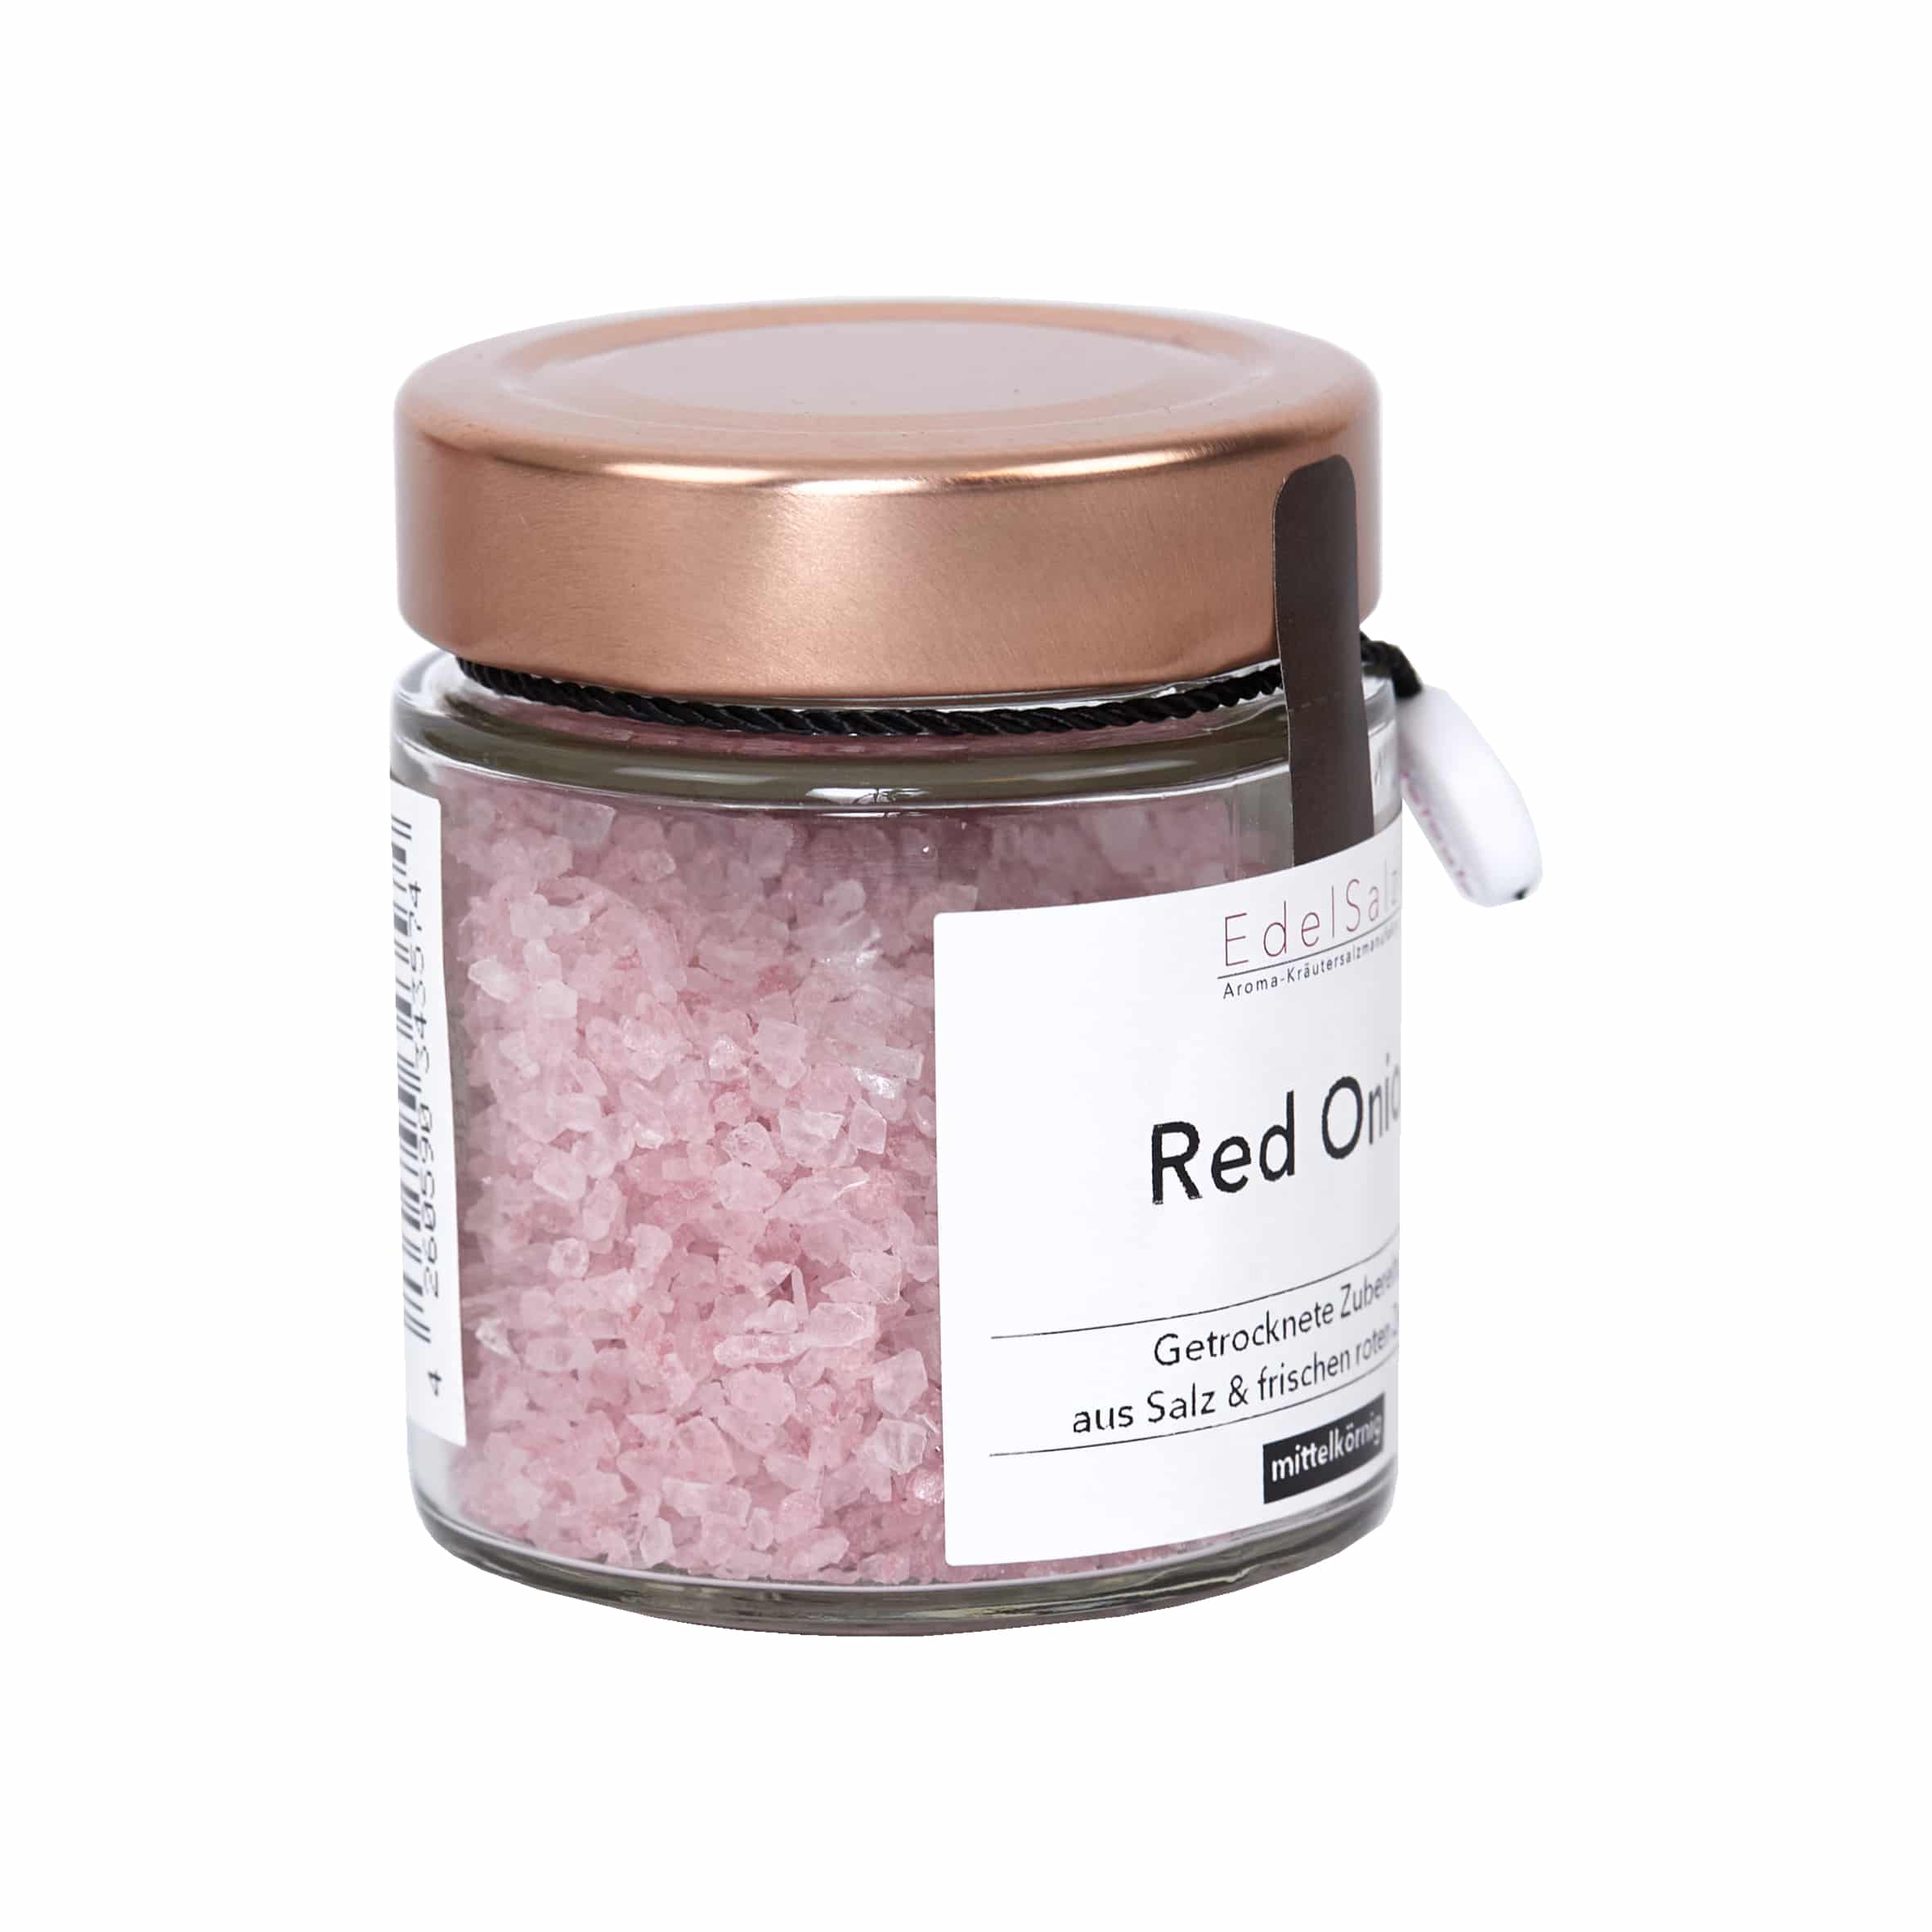 Red Onion Salz 100g von EdelSalz